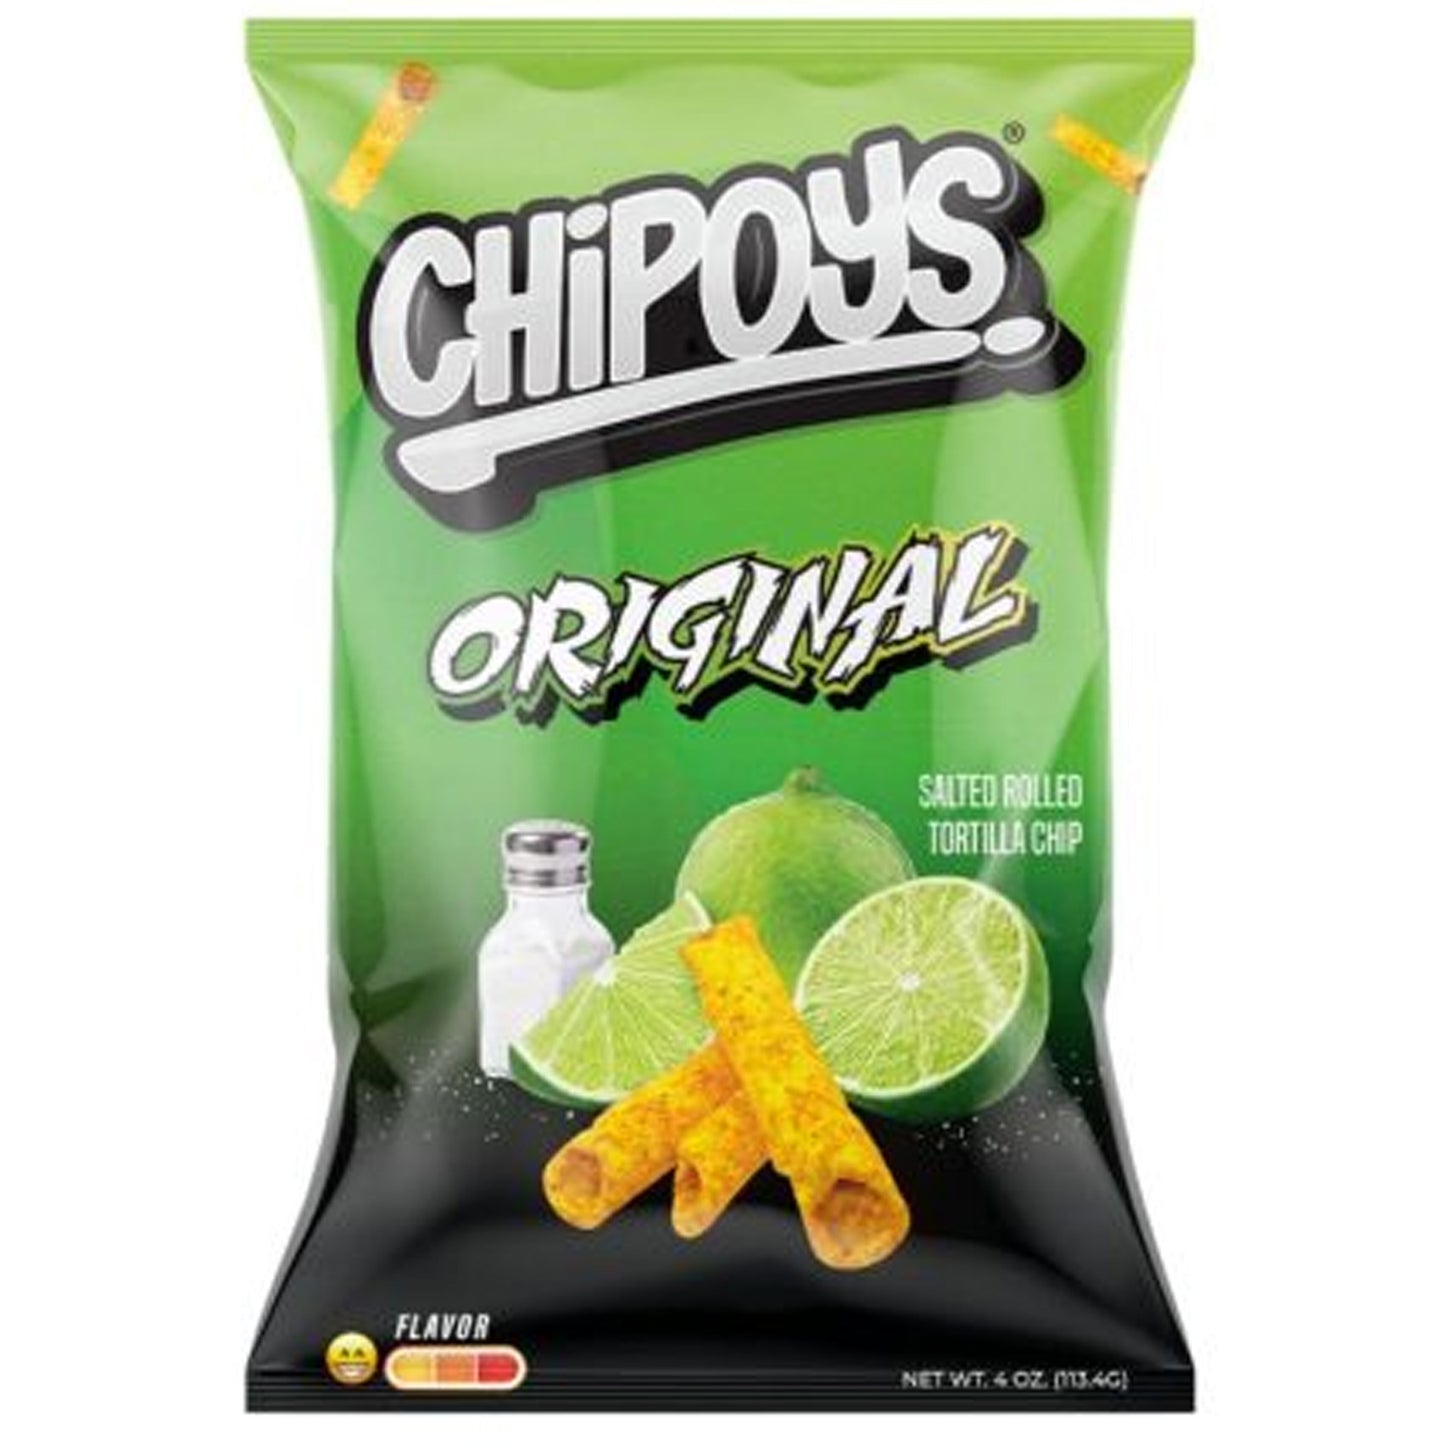 Chipoys Original | 8 x 113g